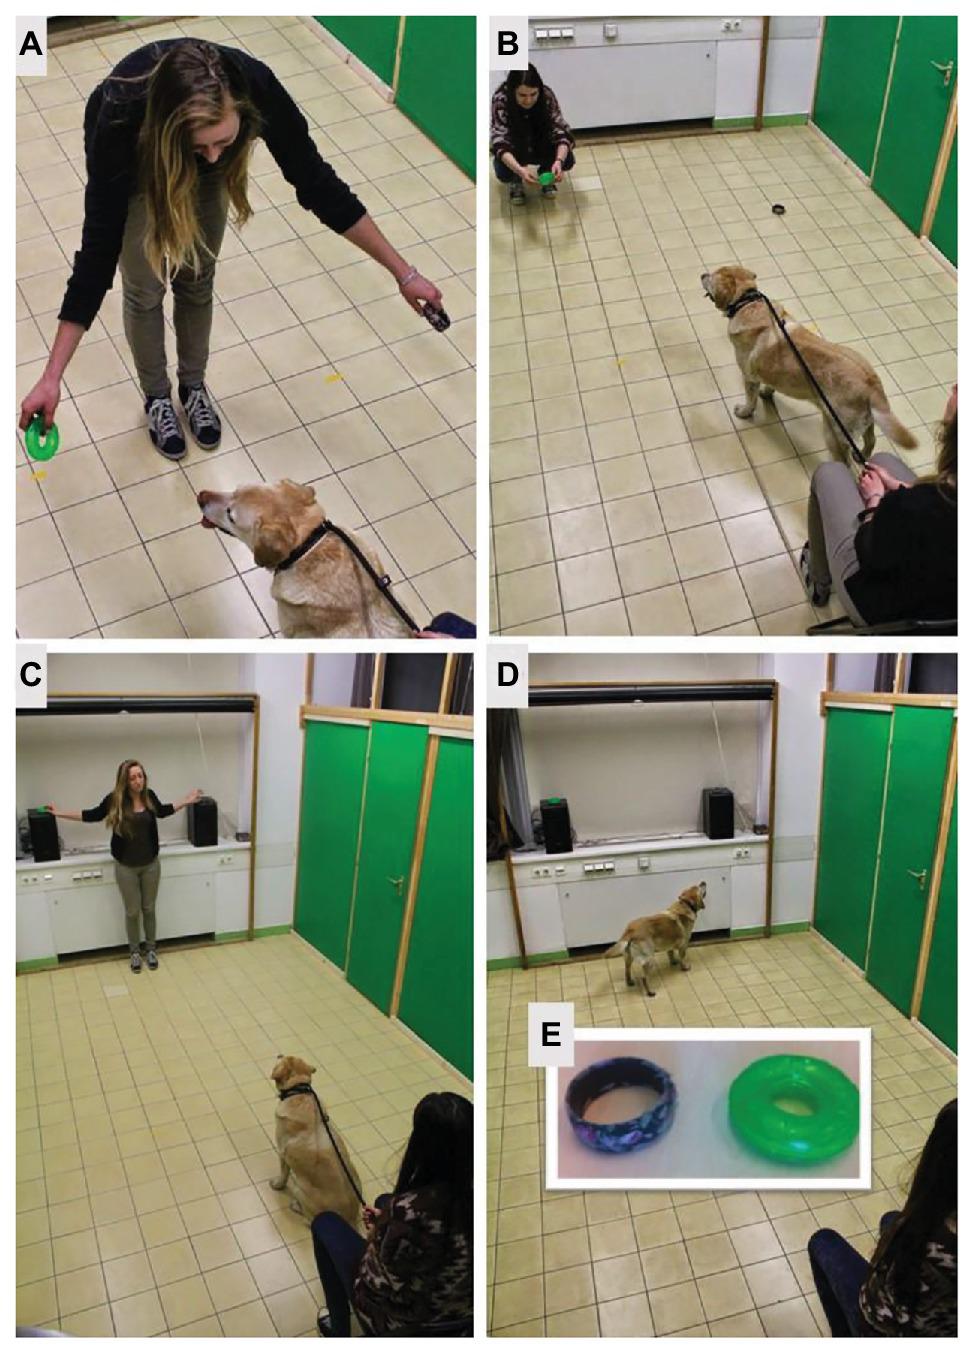 A kísérleti helyzet illusztrációja: A) a tárgyak kiválasztása, B) a gazda eljátssza az érzelmeket, C) a tárgyakat az ablakpárkányra helyezi a kísérletvezető, D) a kutya a tárgyakat nézegeti, E) a tárgyak: balra a karkötő, jobbra a játék.